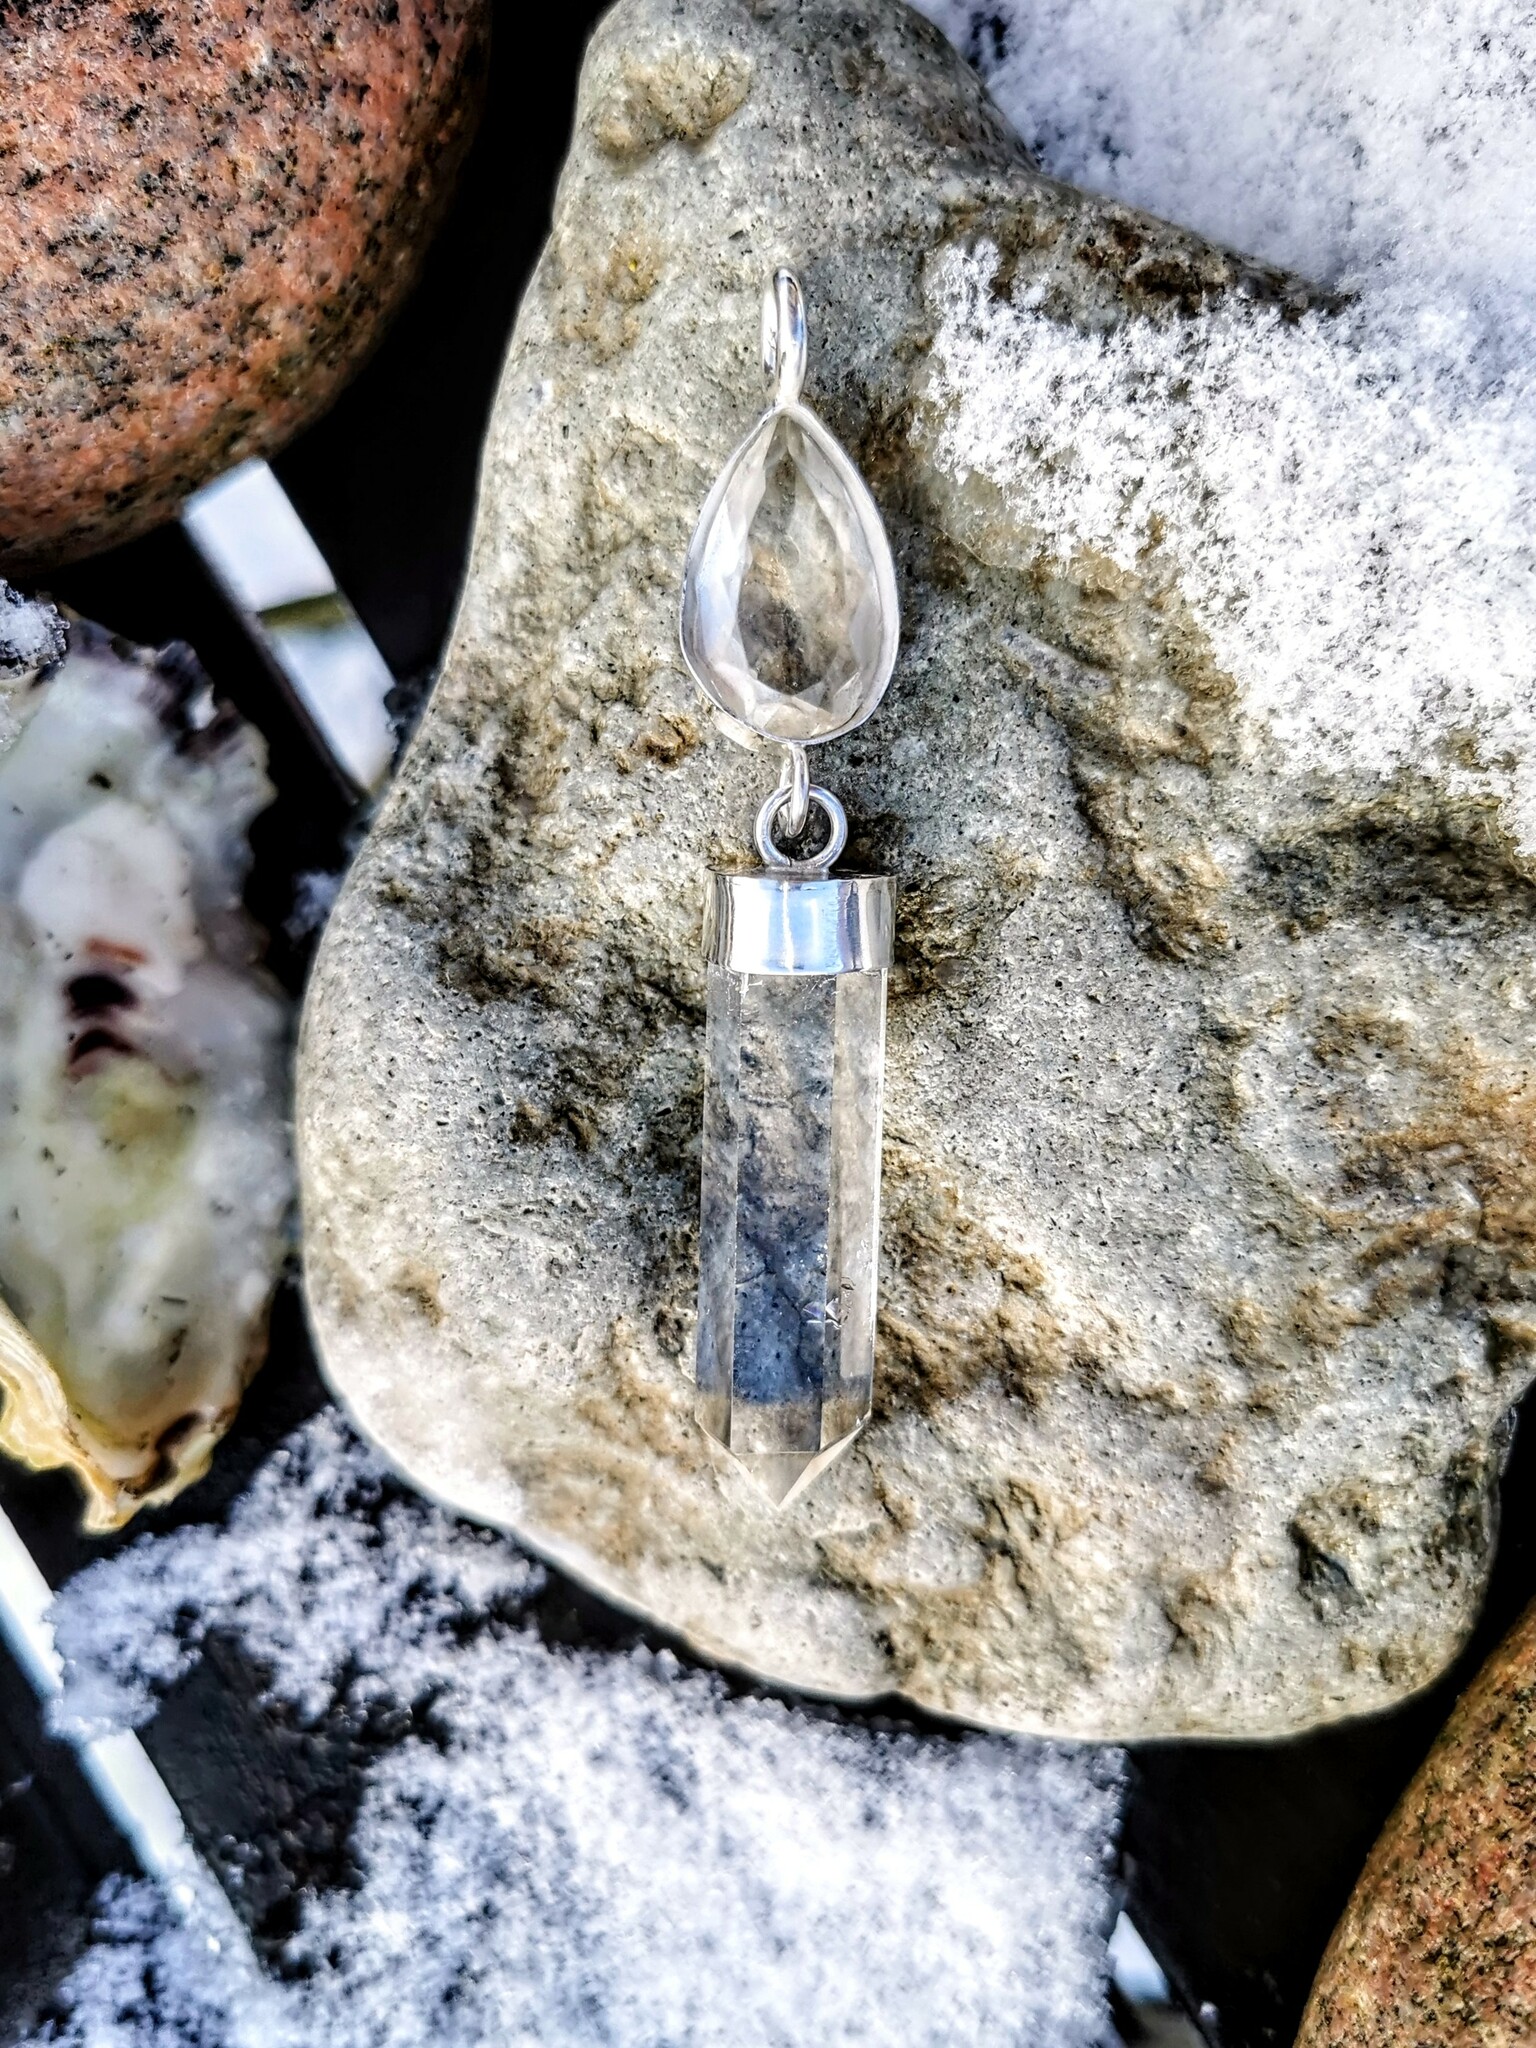 Facettslipad bergkristall med klar bergkristall spets